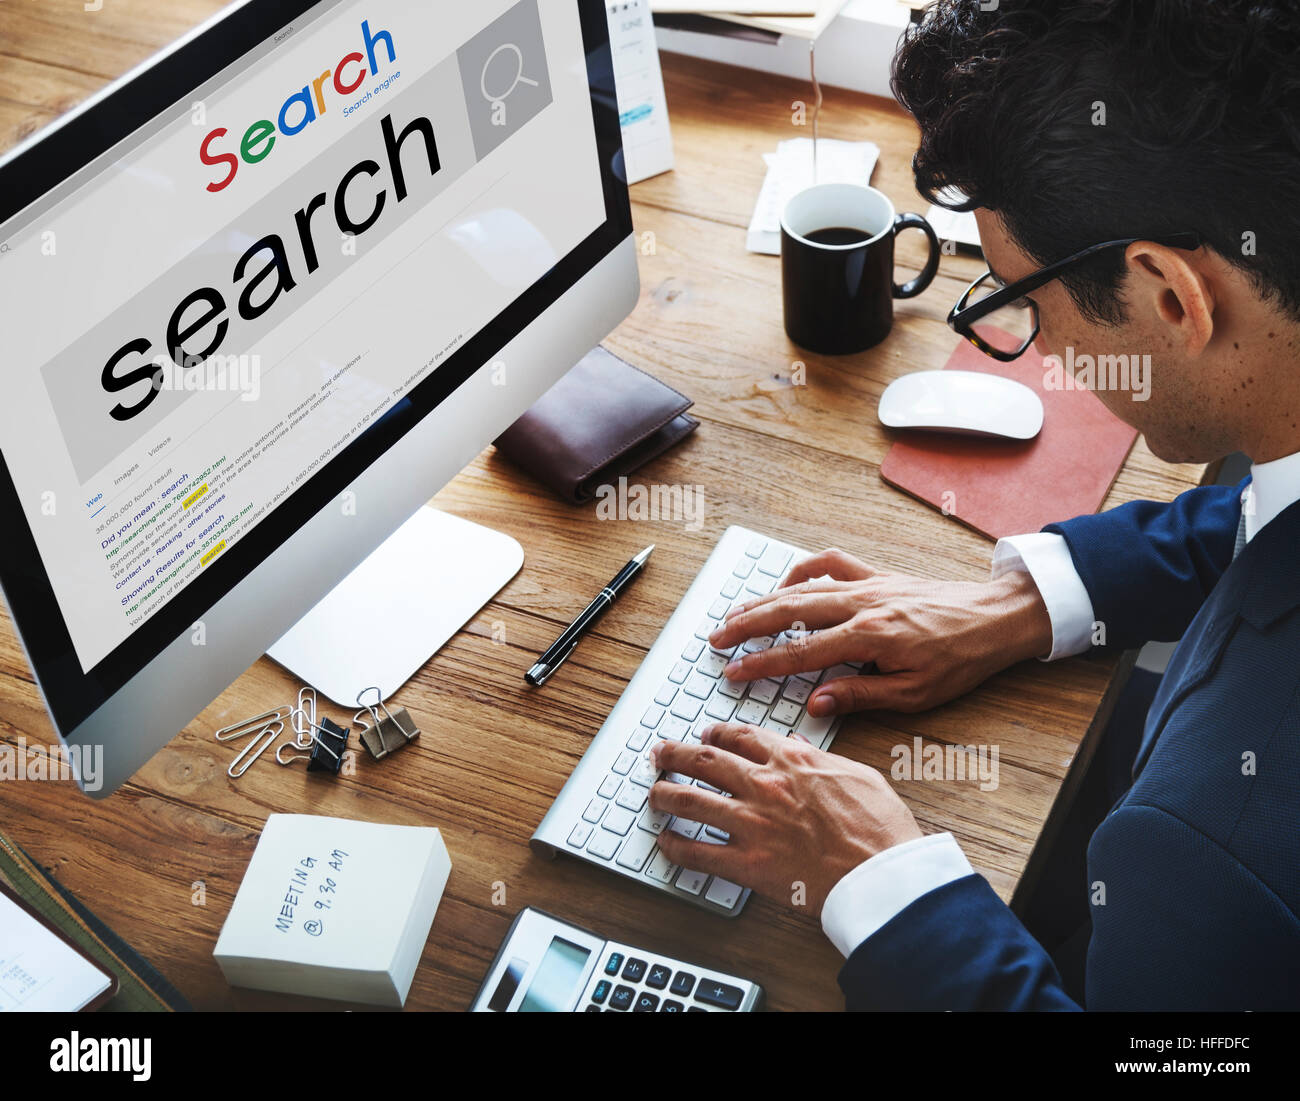 La recherche d'optimisation de moteur de recherche de la technologie de l'information Concept Banque D'Images